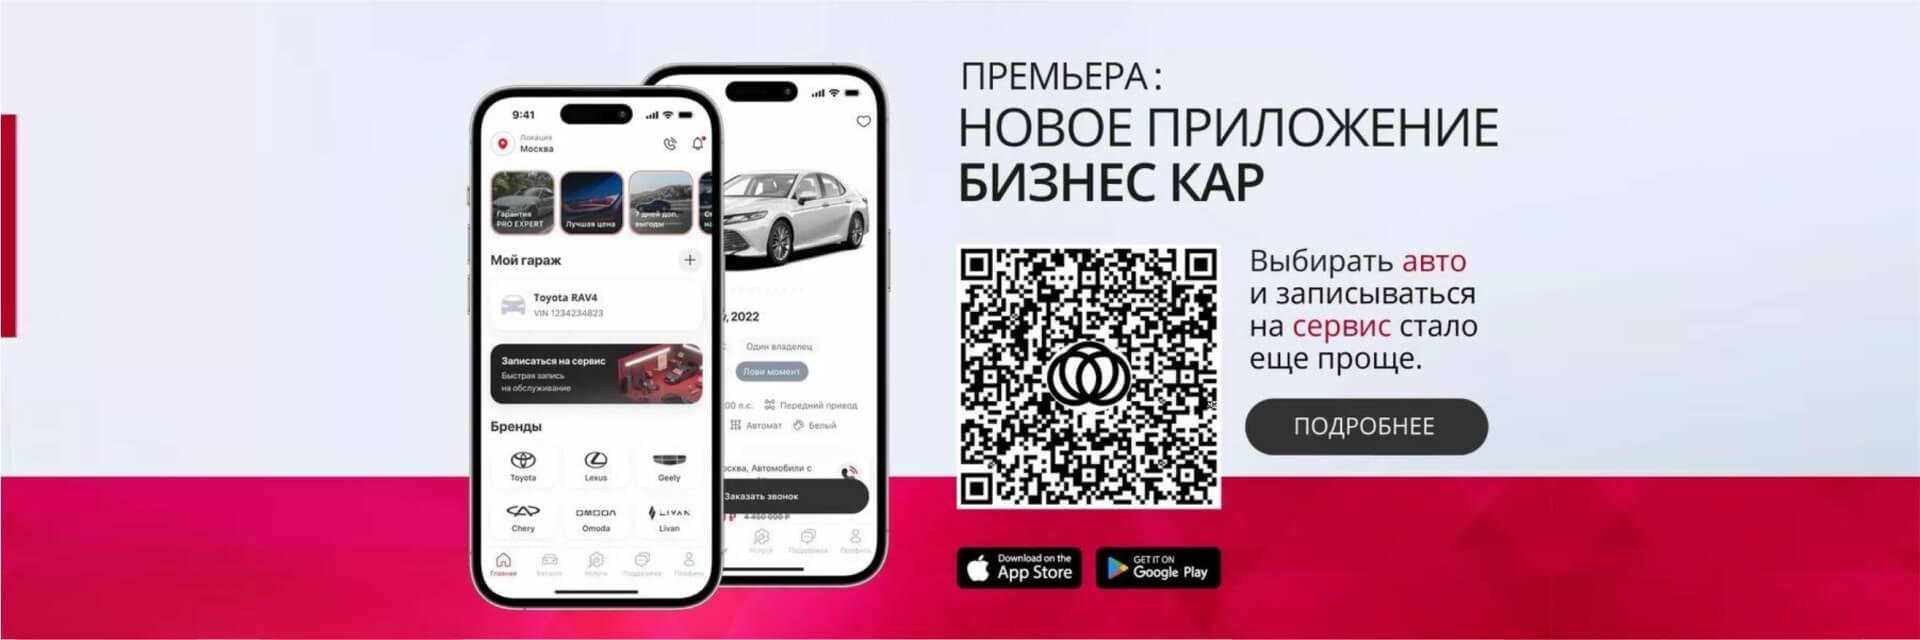 Мобильное приложение Business Car